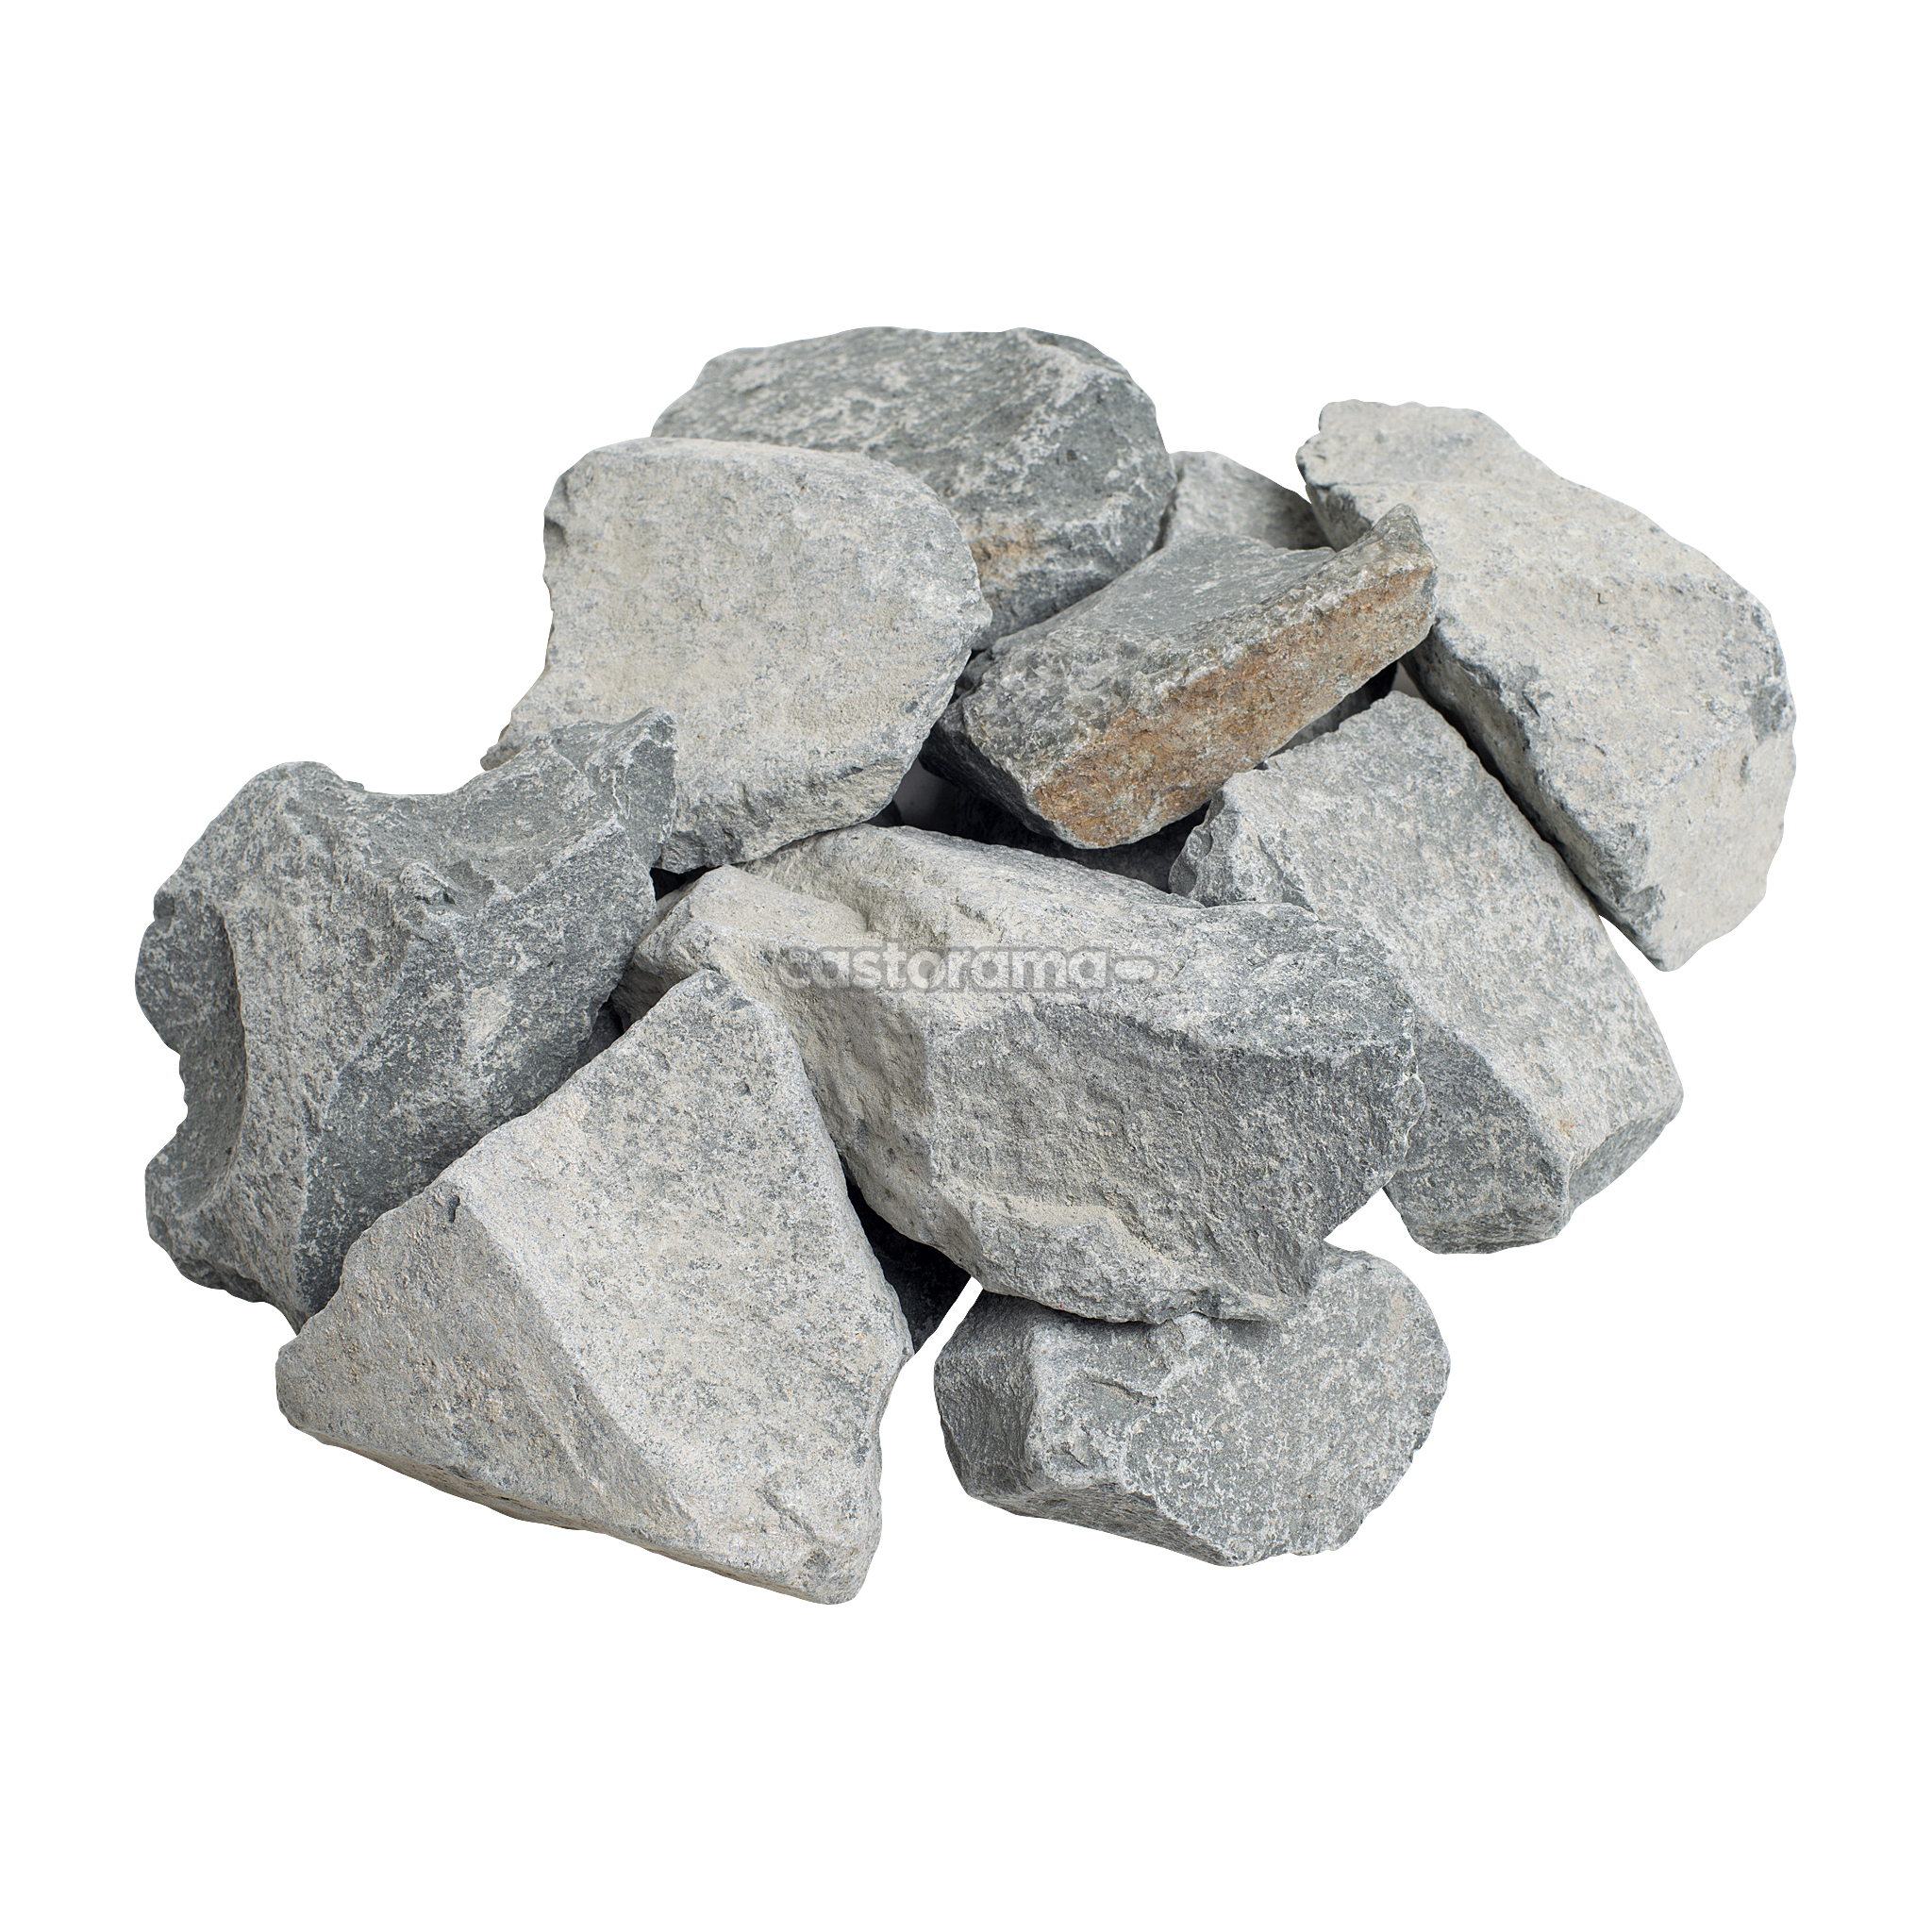 Купить камень саратов. Камень габбро-диабаз, 20 кг. Камень габбро-диабаз (20кг, колотый) Огненный камень. Камни габбро-диабаз 20 кг Огненный камень. Камень колотый банные штучки габбро-диабаз 20 кг.